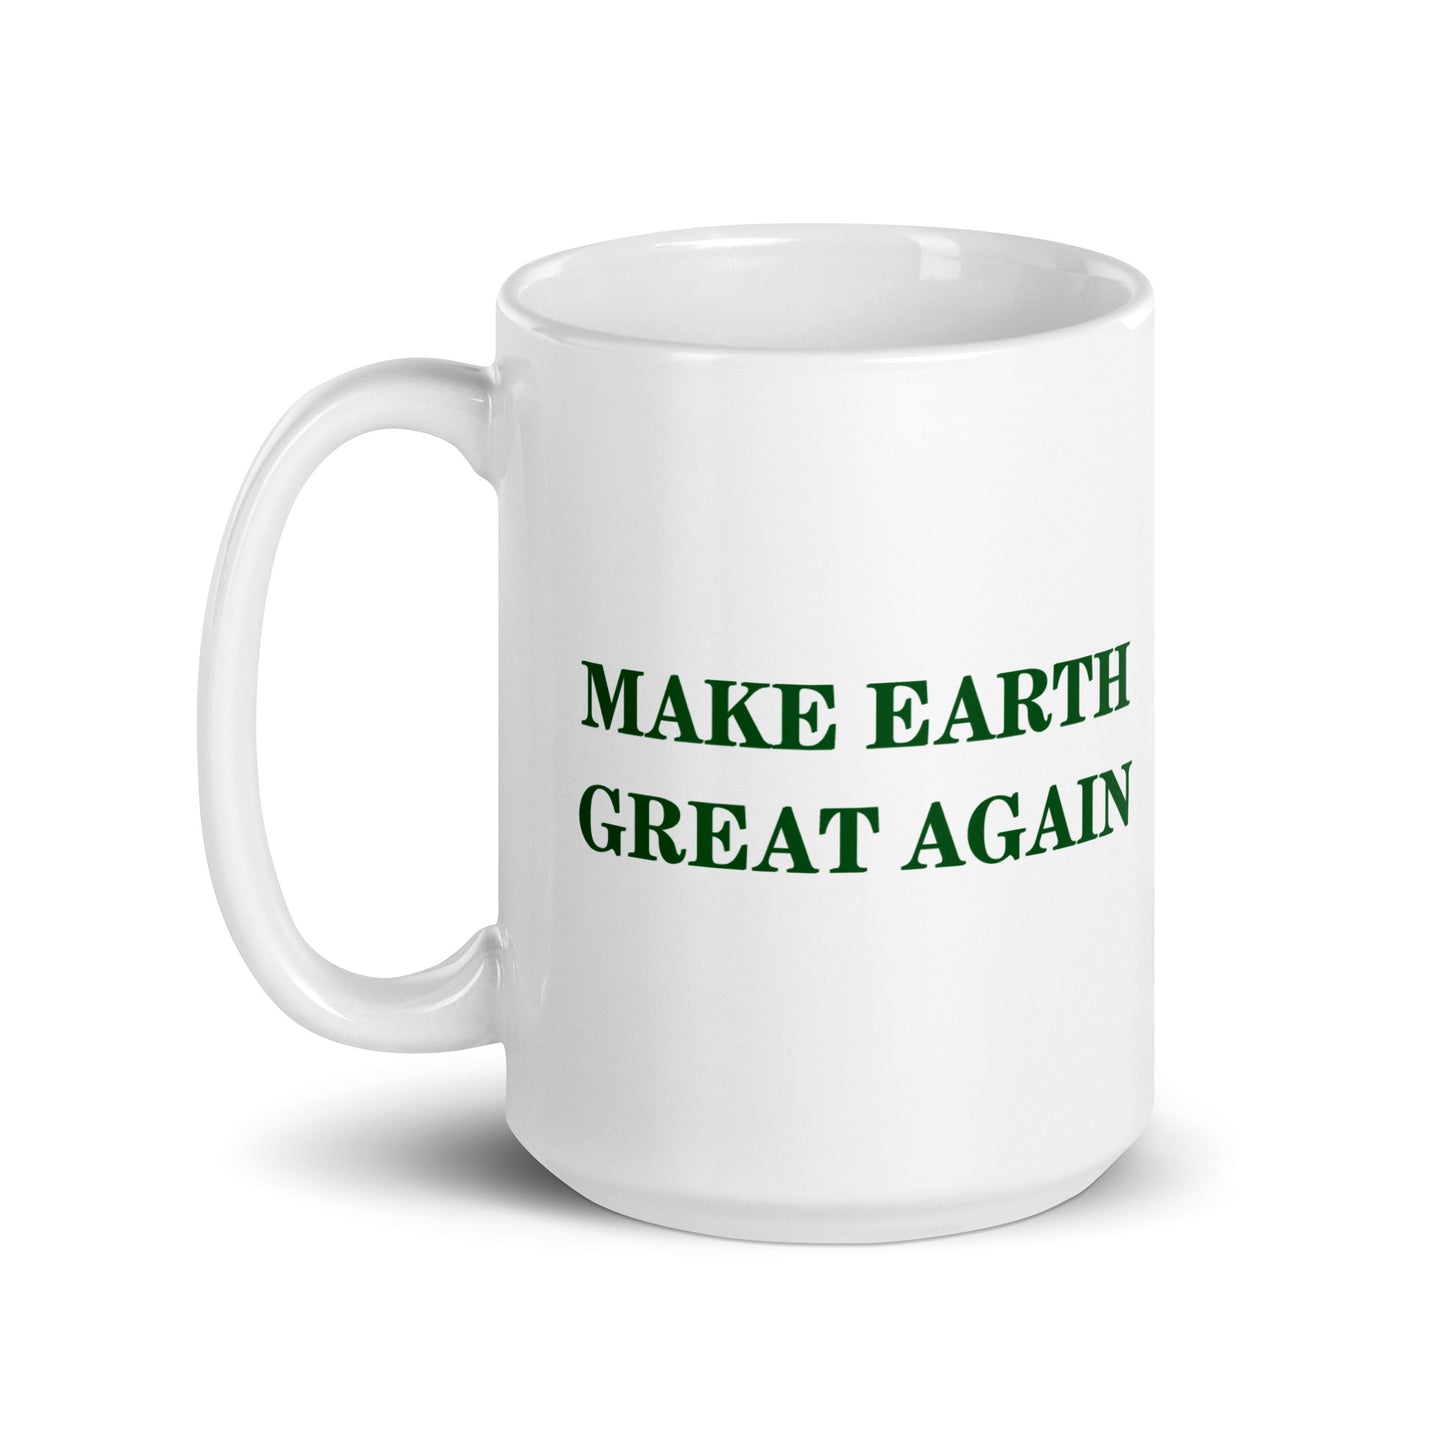 Make Earth Great Again White Glossy Mug